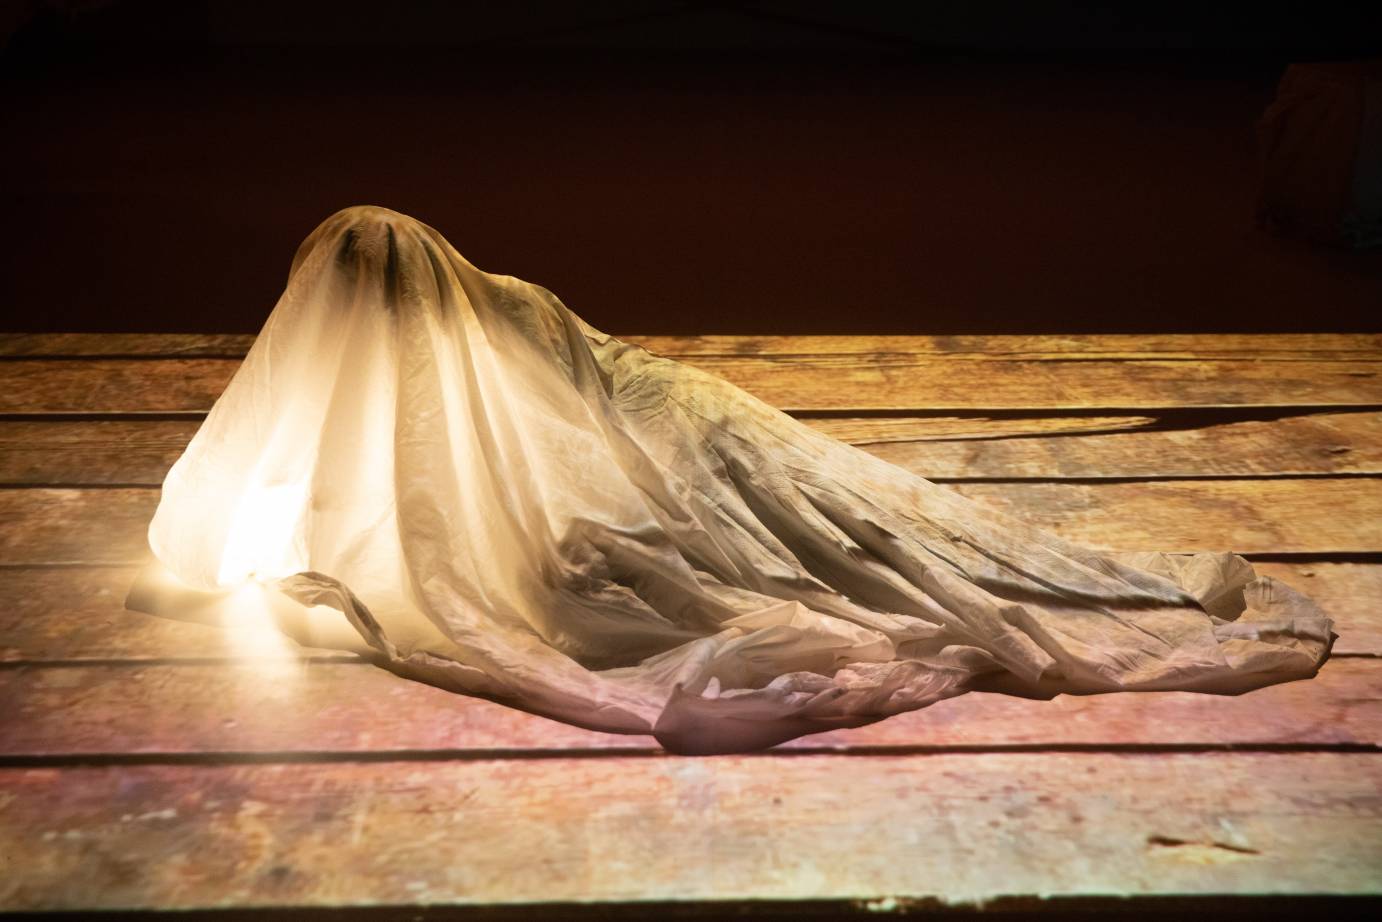 A woman lies in a white shroud